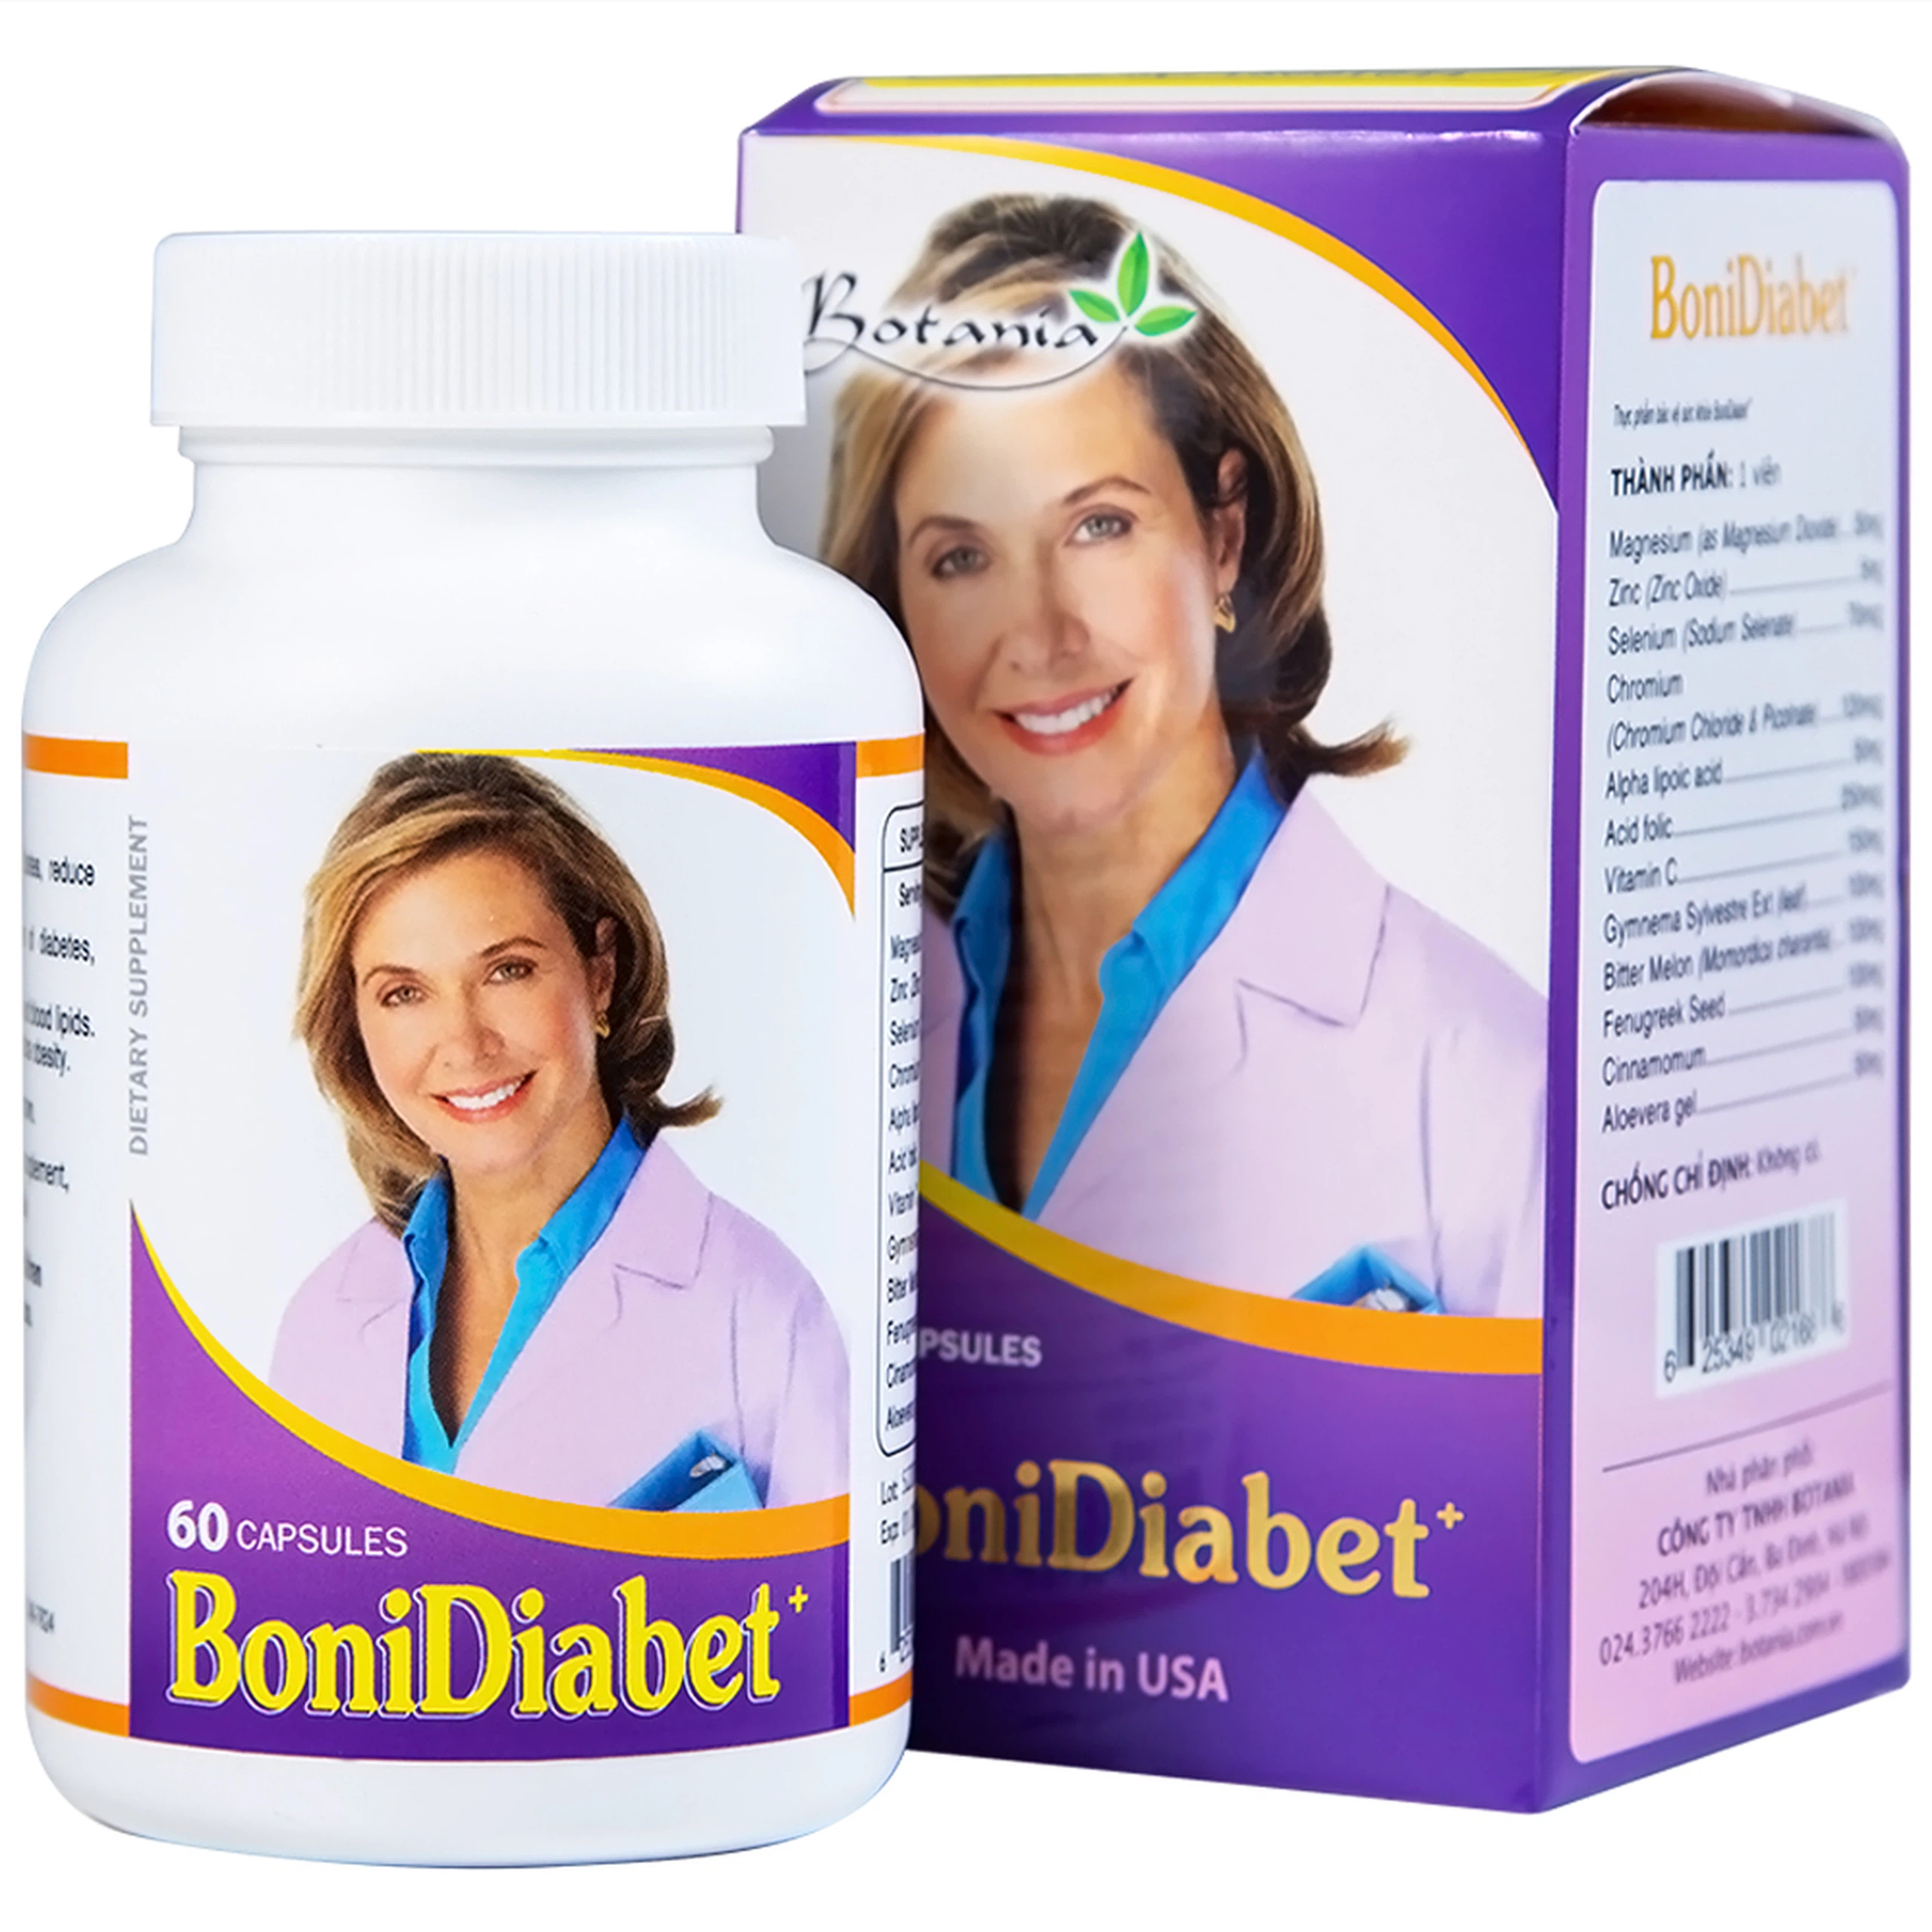 Viên uống BoniDiabet Botania hỗ trợ điều trị bệnh tiểu đường, làm giảm glucose máu (60 viên)